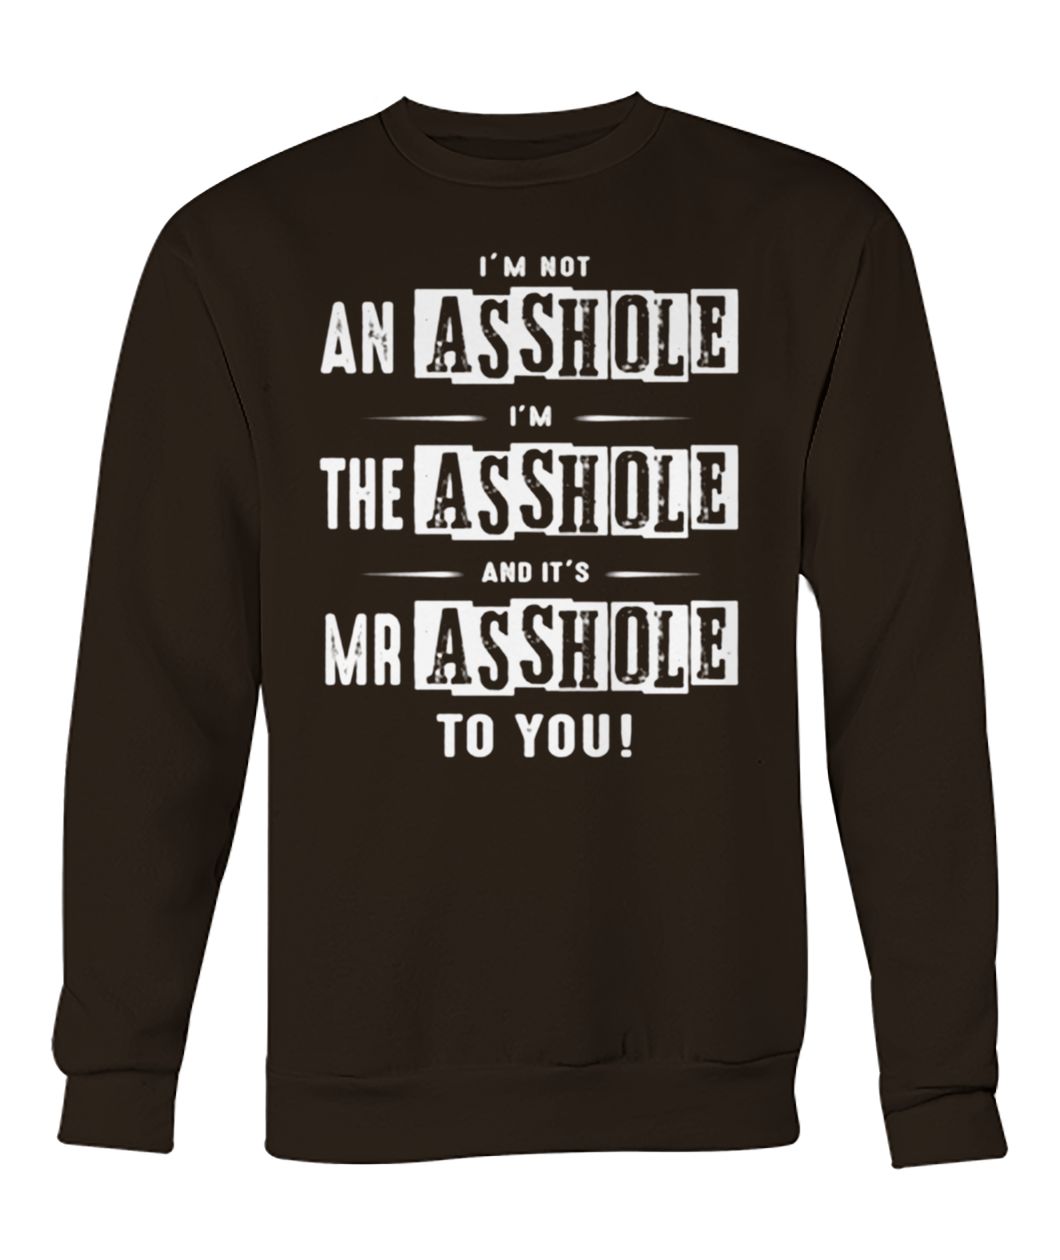 I’m not an asshole I’m the asshole and it’s mr asshole to you crew neck sweatshirt